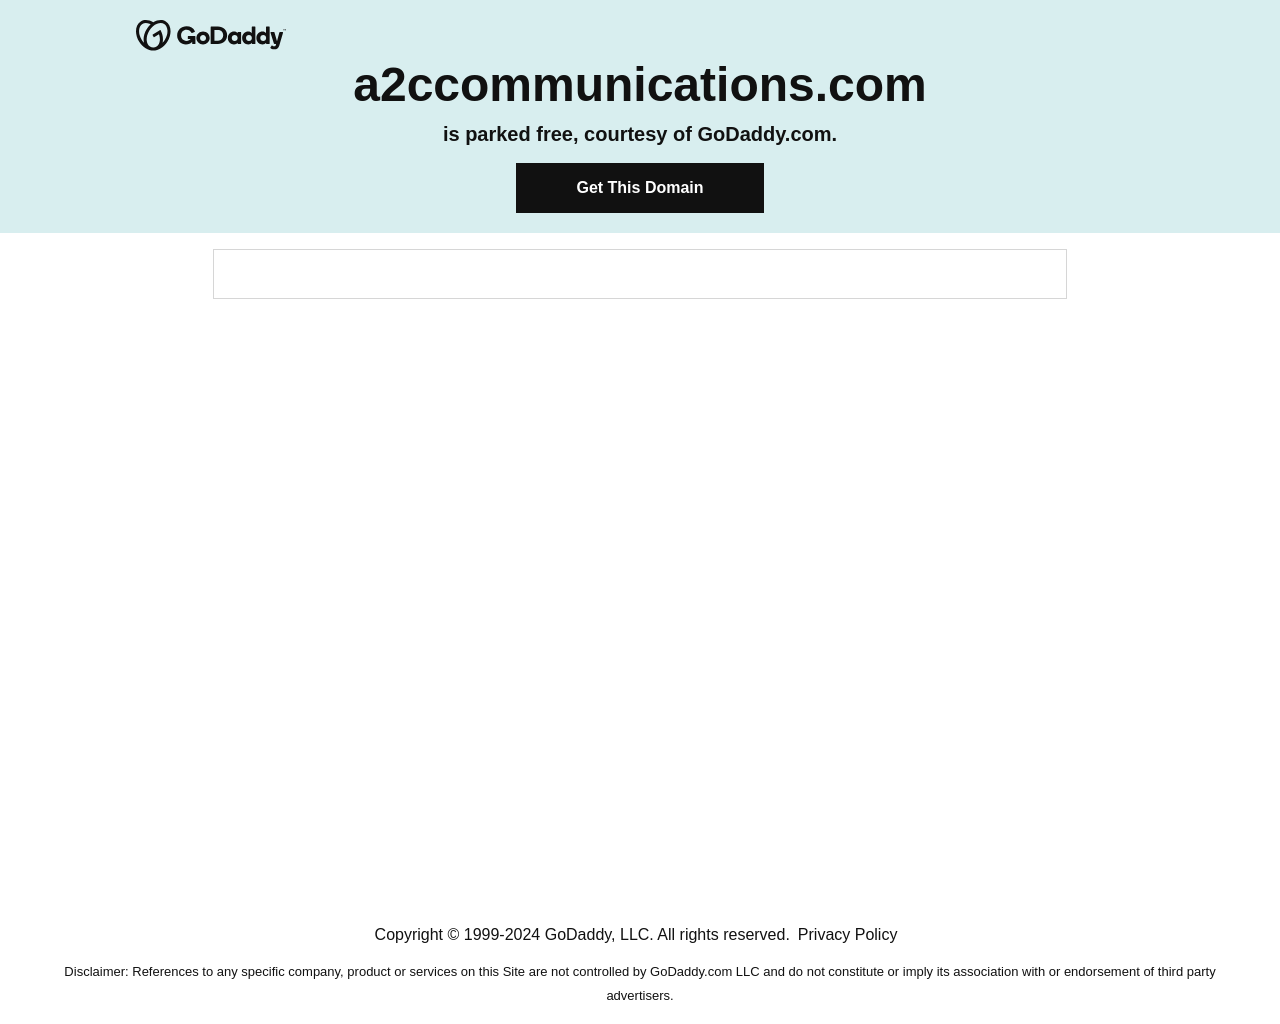 a2ccommunications.com